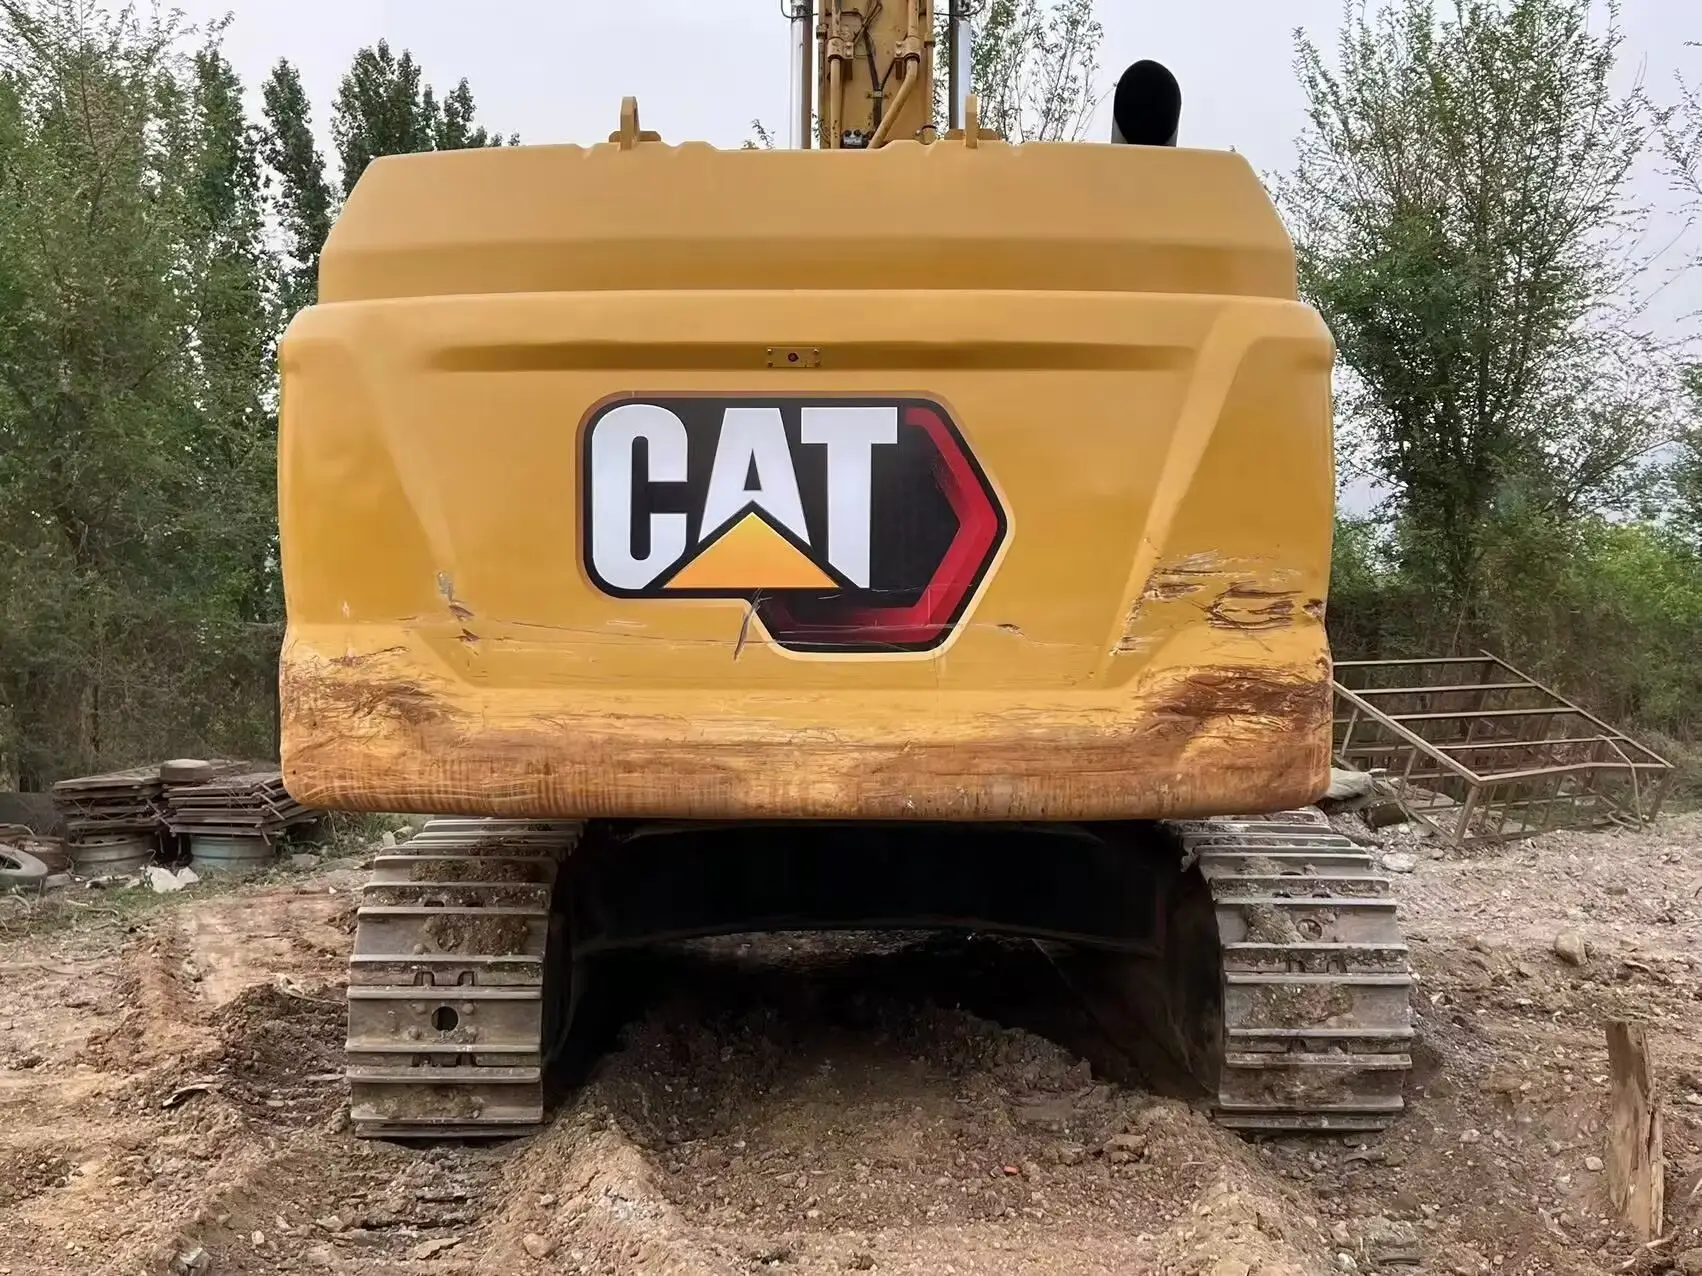 Ikinci el kedi ekskavatör 349 kullanılan Catpillar 50 ton cevher siper kazı hidrolik paletli büyük ekskavatör